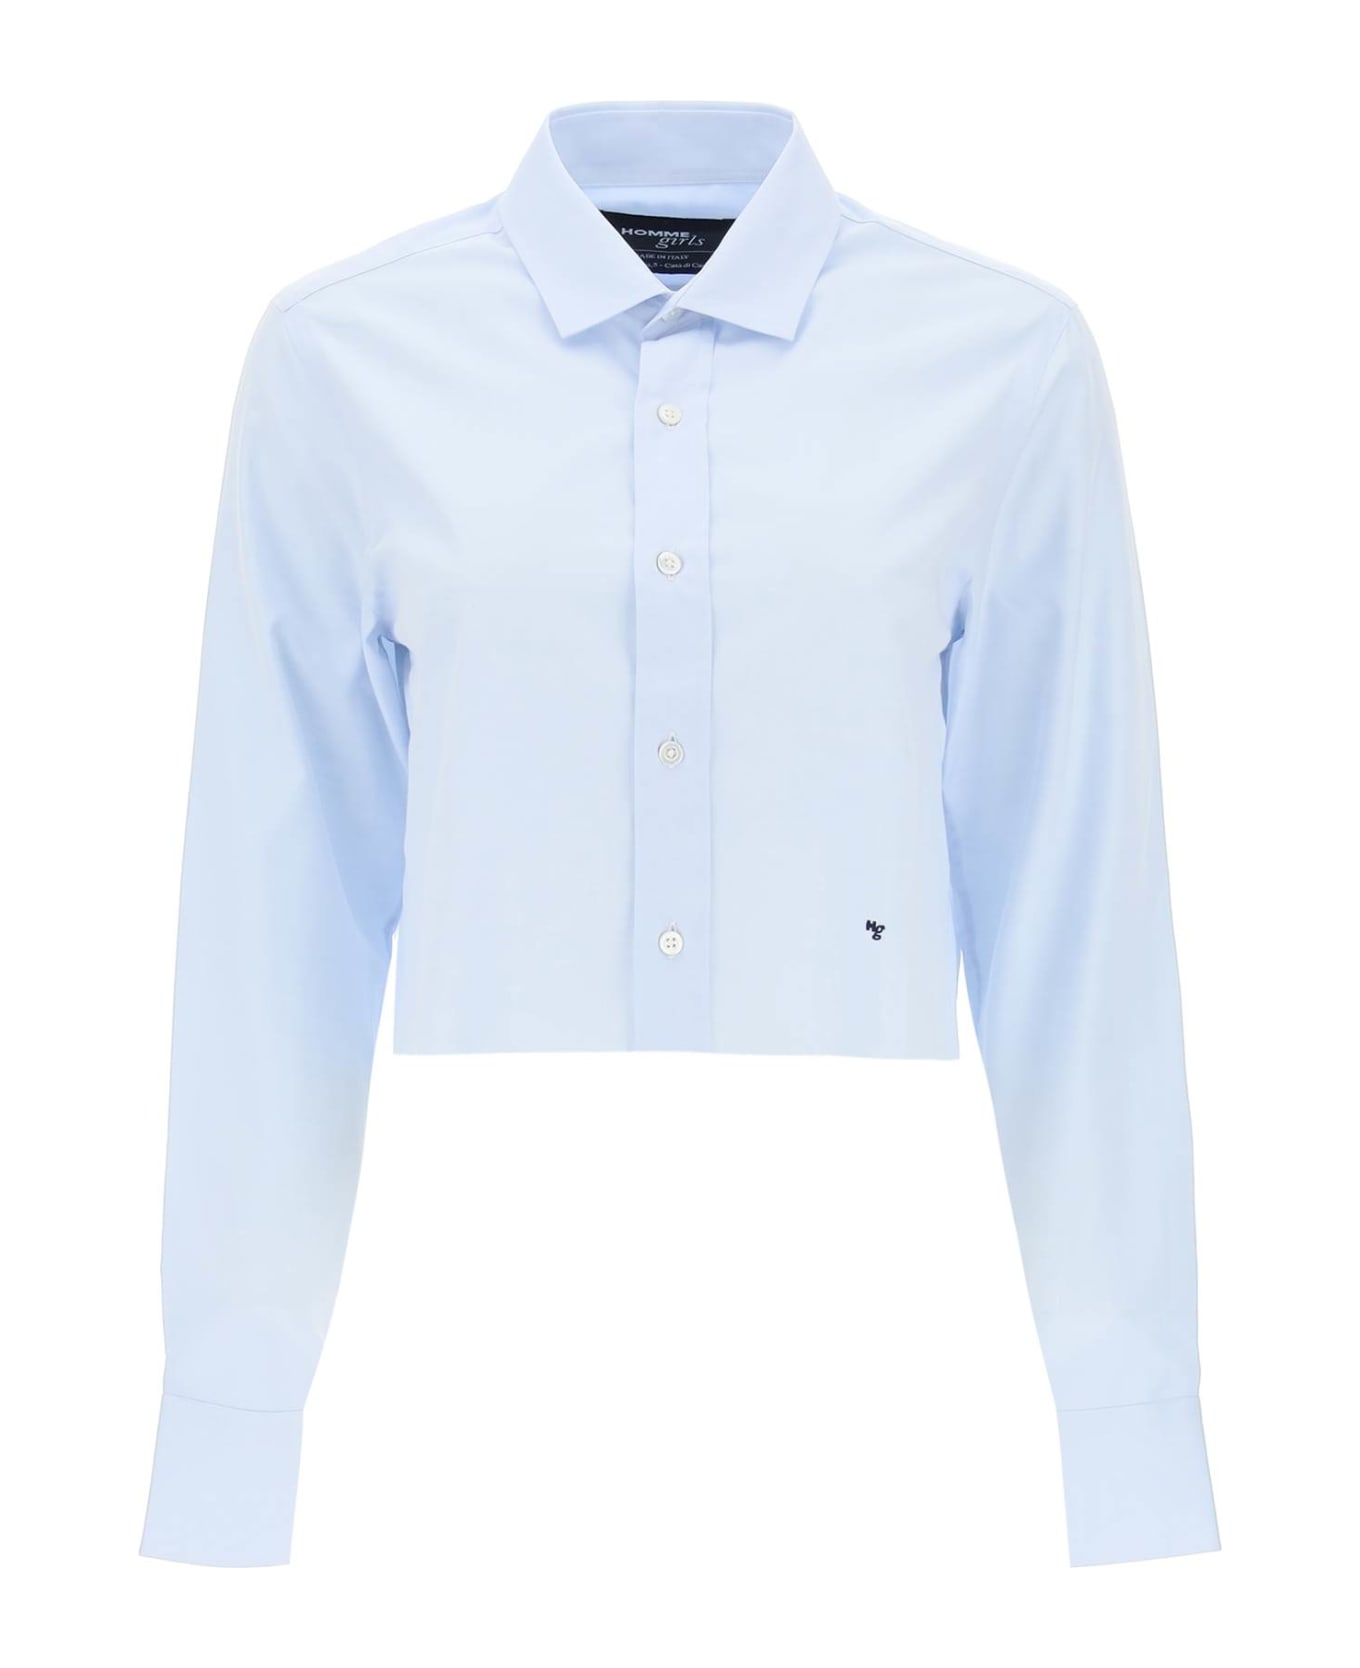 HommeGirls Cotton Twill Cropped Shirt - LIGHT BLUE (Light blue)